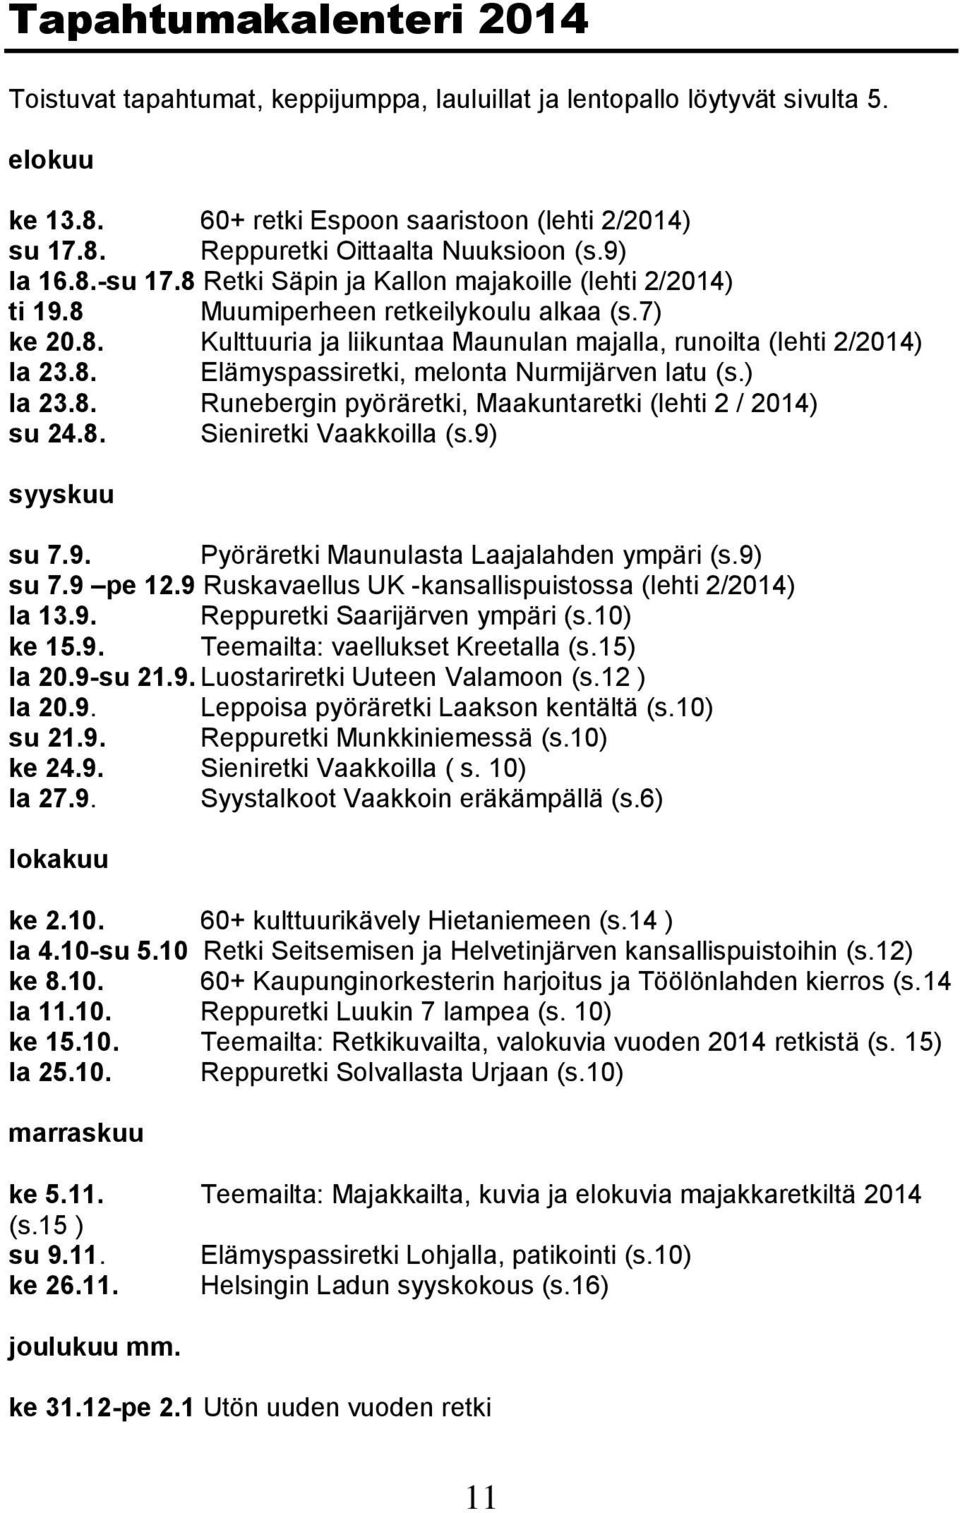 ) la 23.8. Runebergin pyöräretki, Maakuntaretki (lehti 2 / 2014) su 24.8. Sieniretki Vaakkoilla (s.9) syyskuu su 7.9. Pyöräretki Maunulasta Laajalahden ympäri (s.9) su 7.9 pe 12.